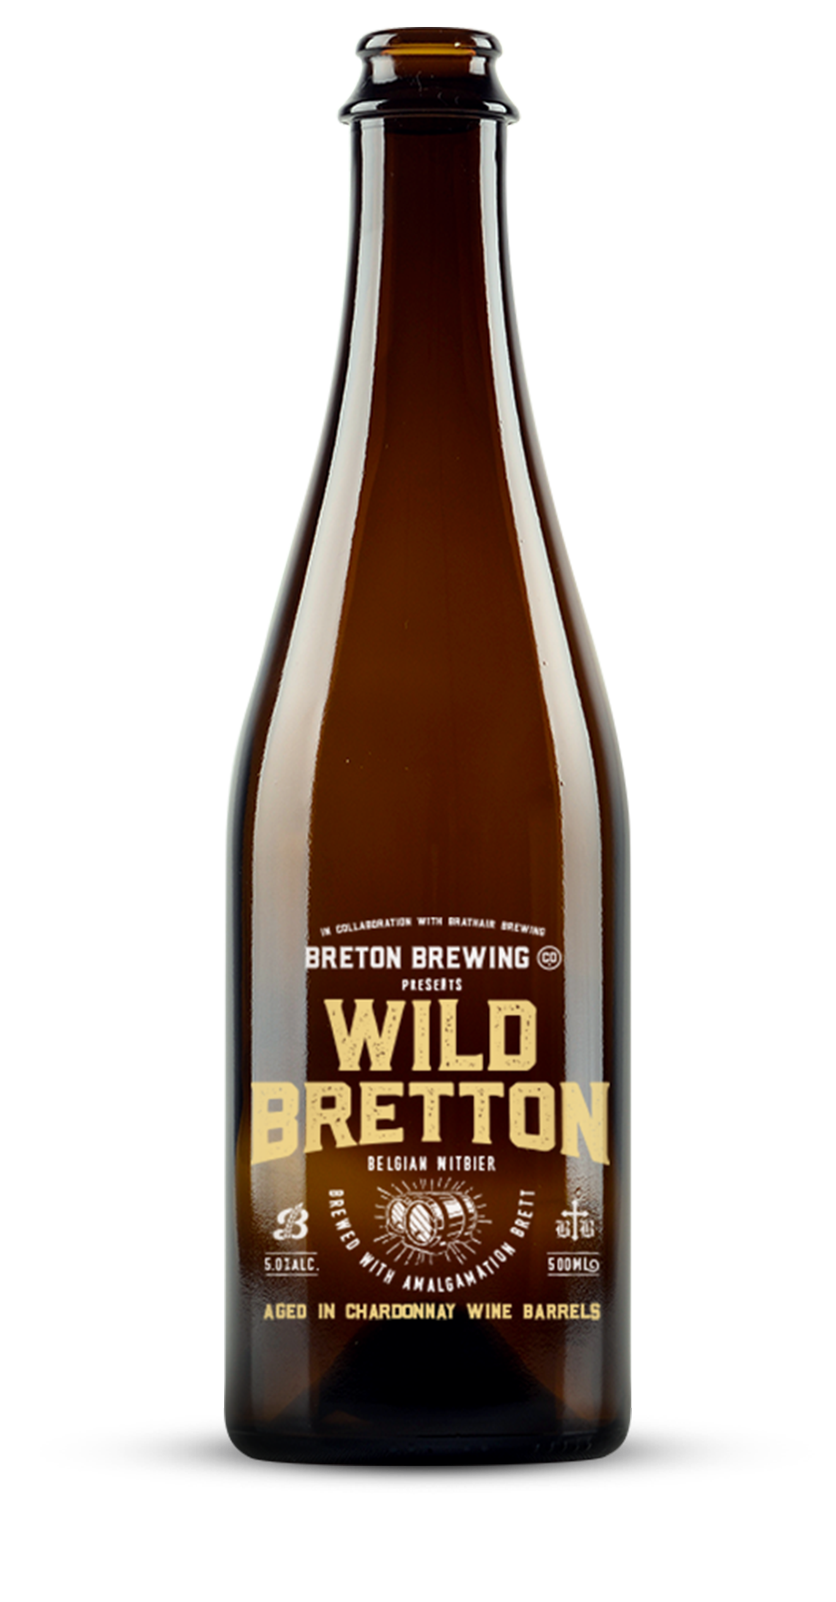 Wild Bretton Belgian Witbier – Chardonnay